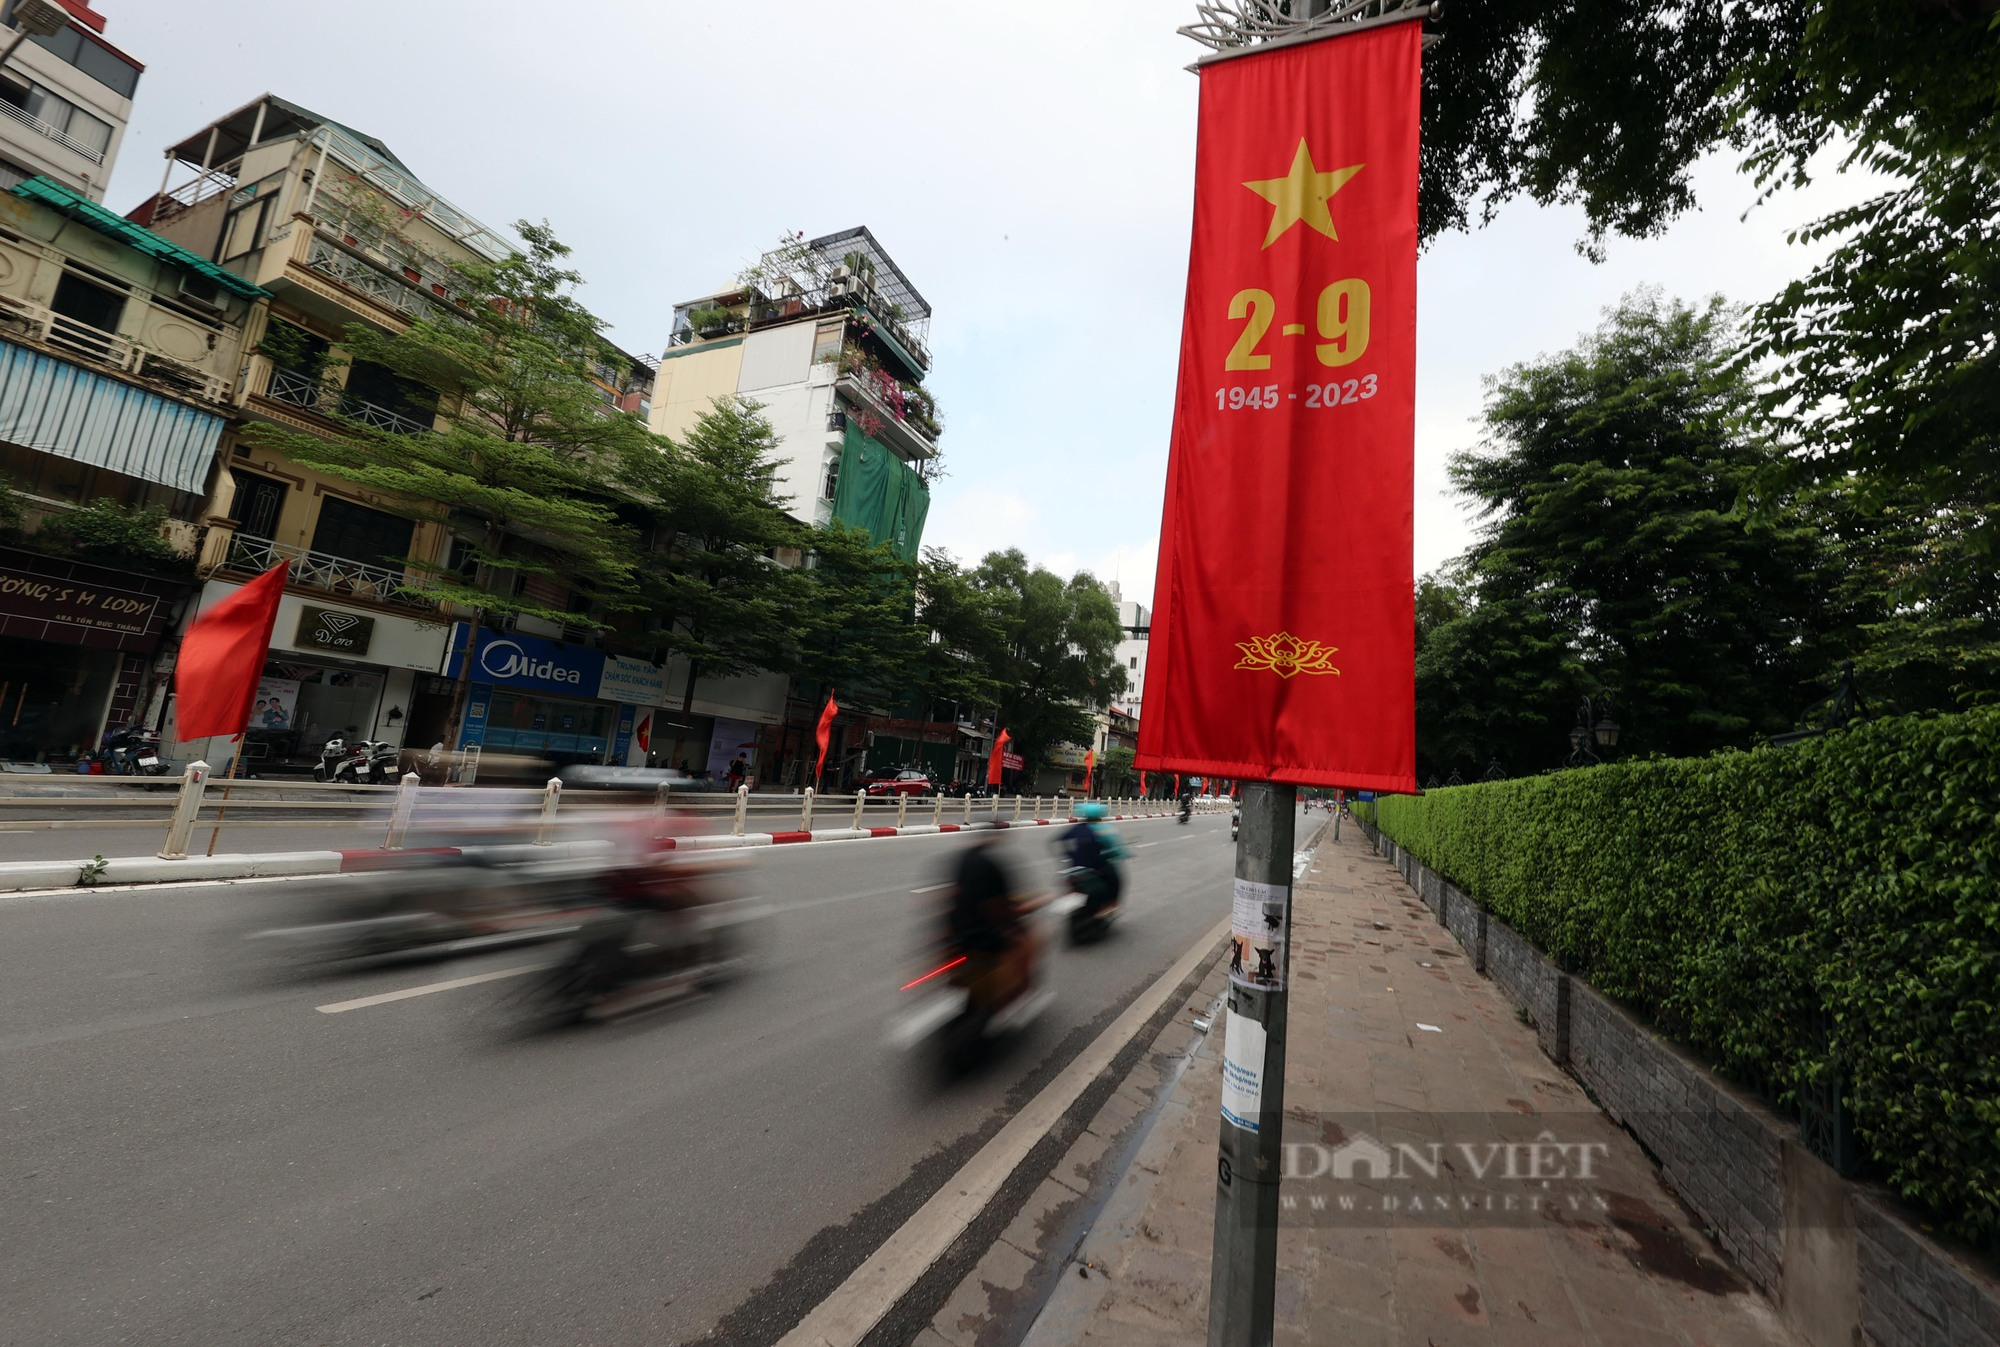 Đường phố Thủ đô được trang hoàng rực rỡ chào mừng ngày Quốc khánh 2/9 - Ảnh 5.